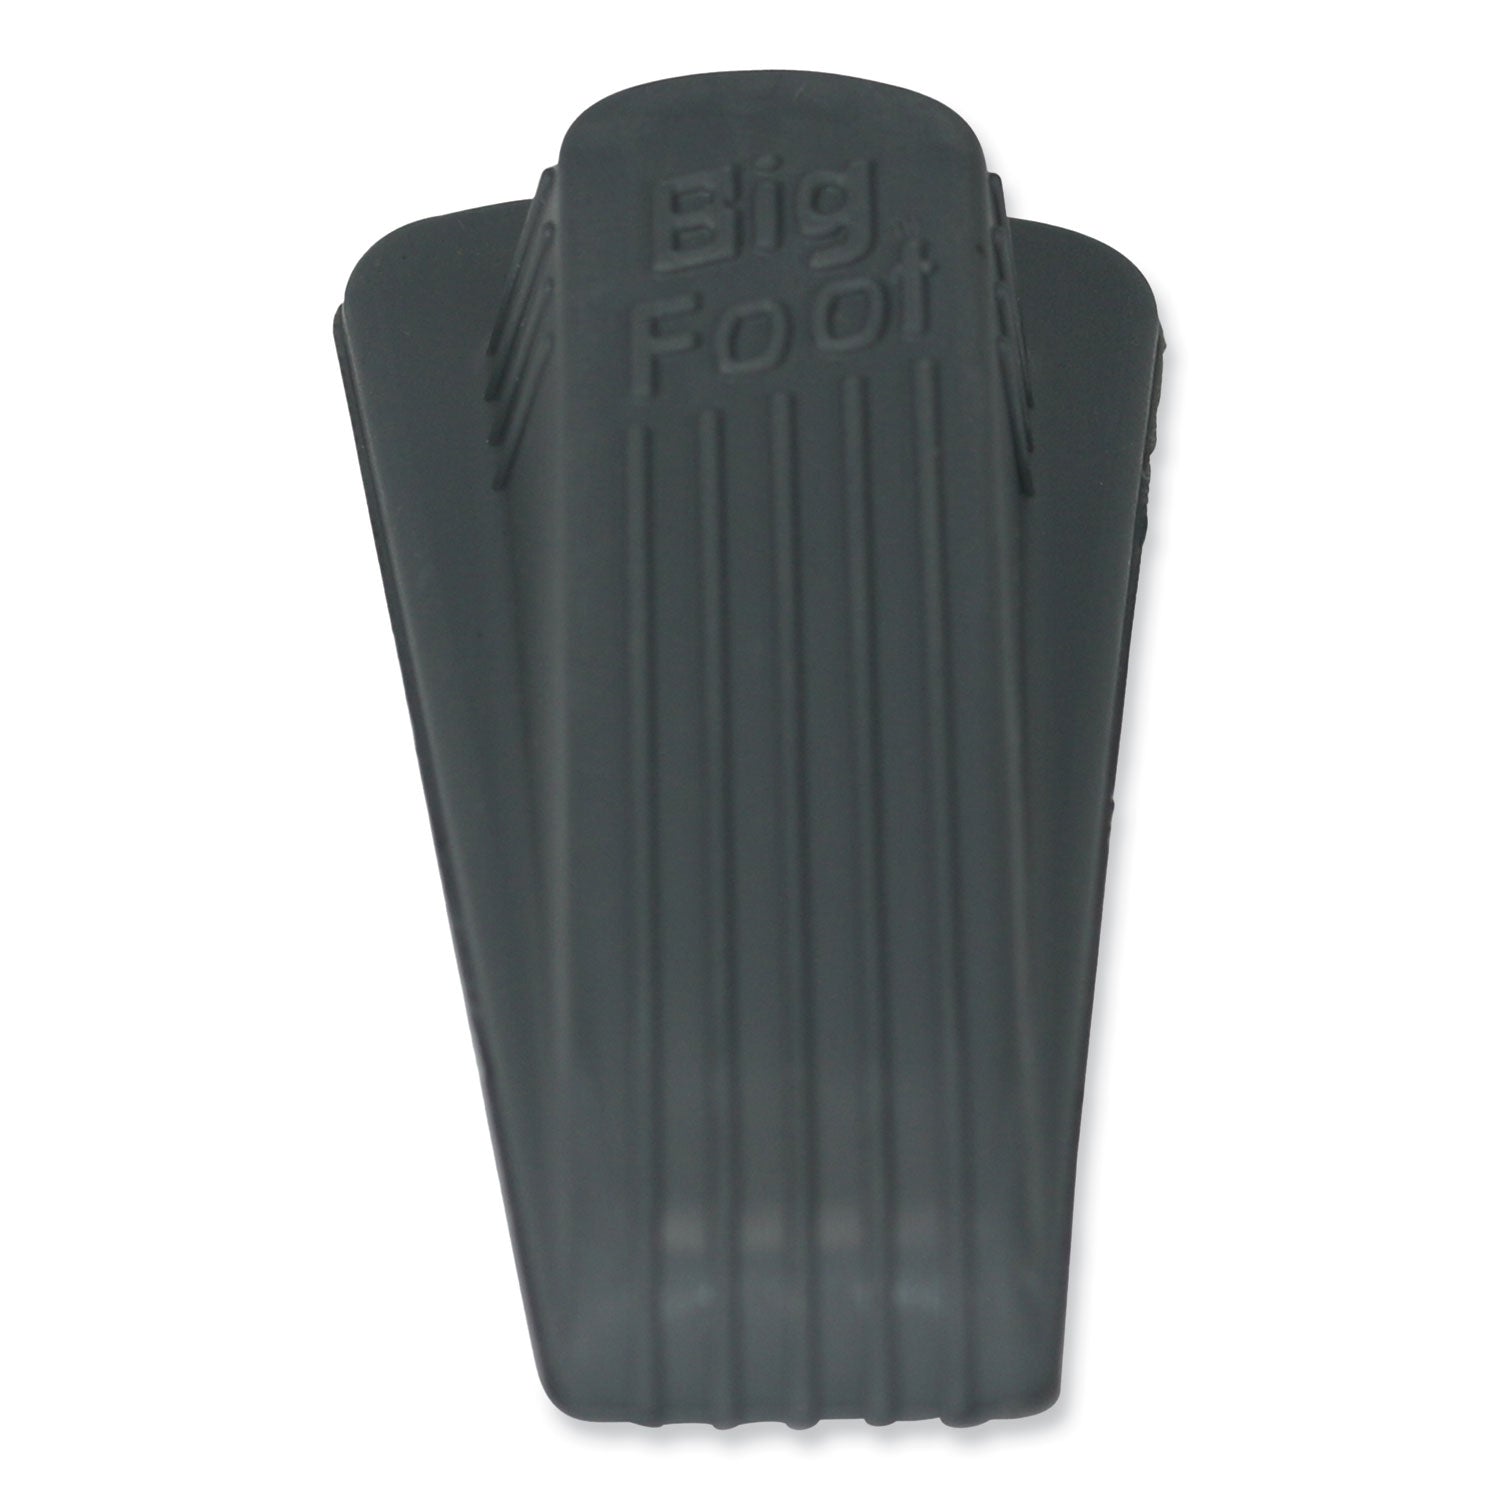 Big Foot Doorstop, No Slip Rubber Wedge, 2.25w x 4.75d x 1.25h, Gray, 2/Pack - 